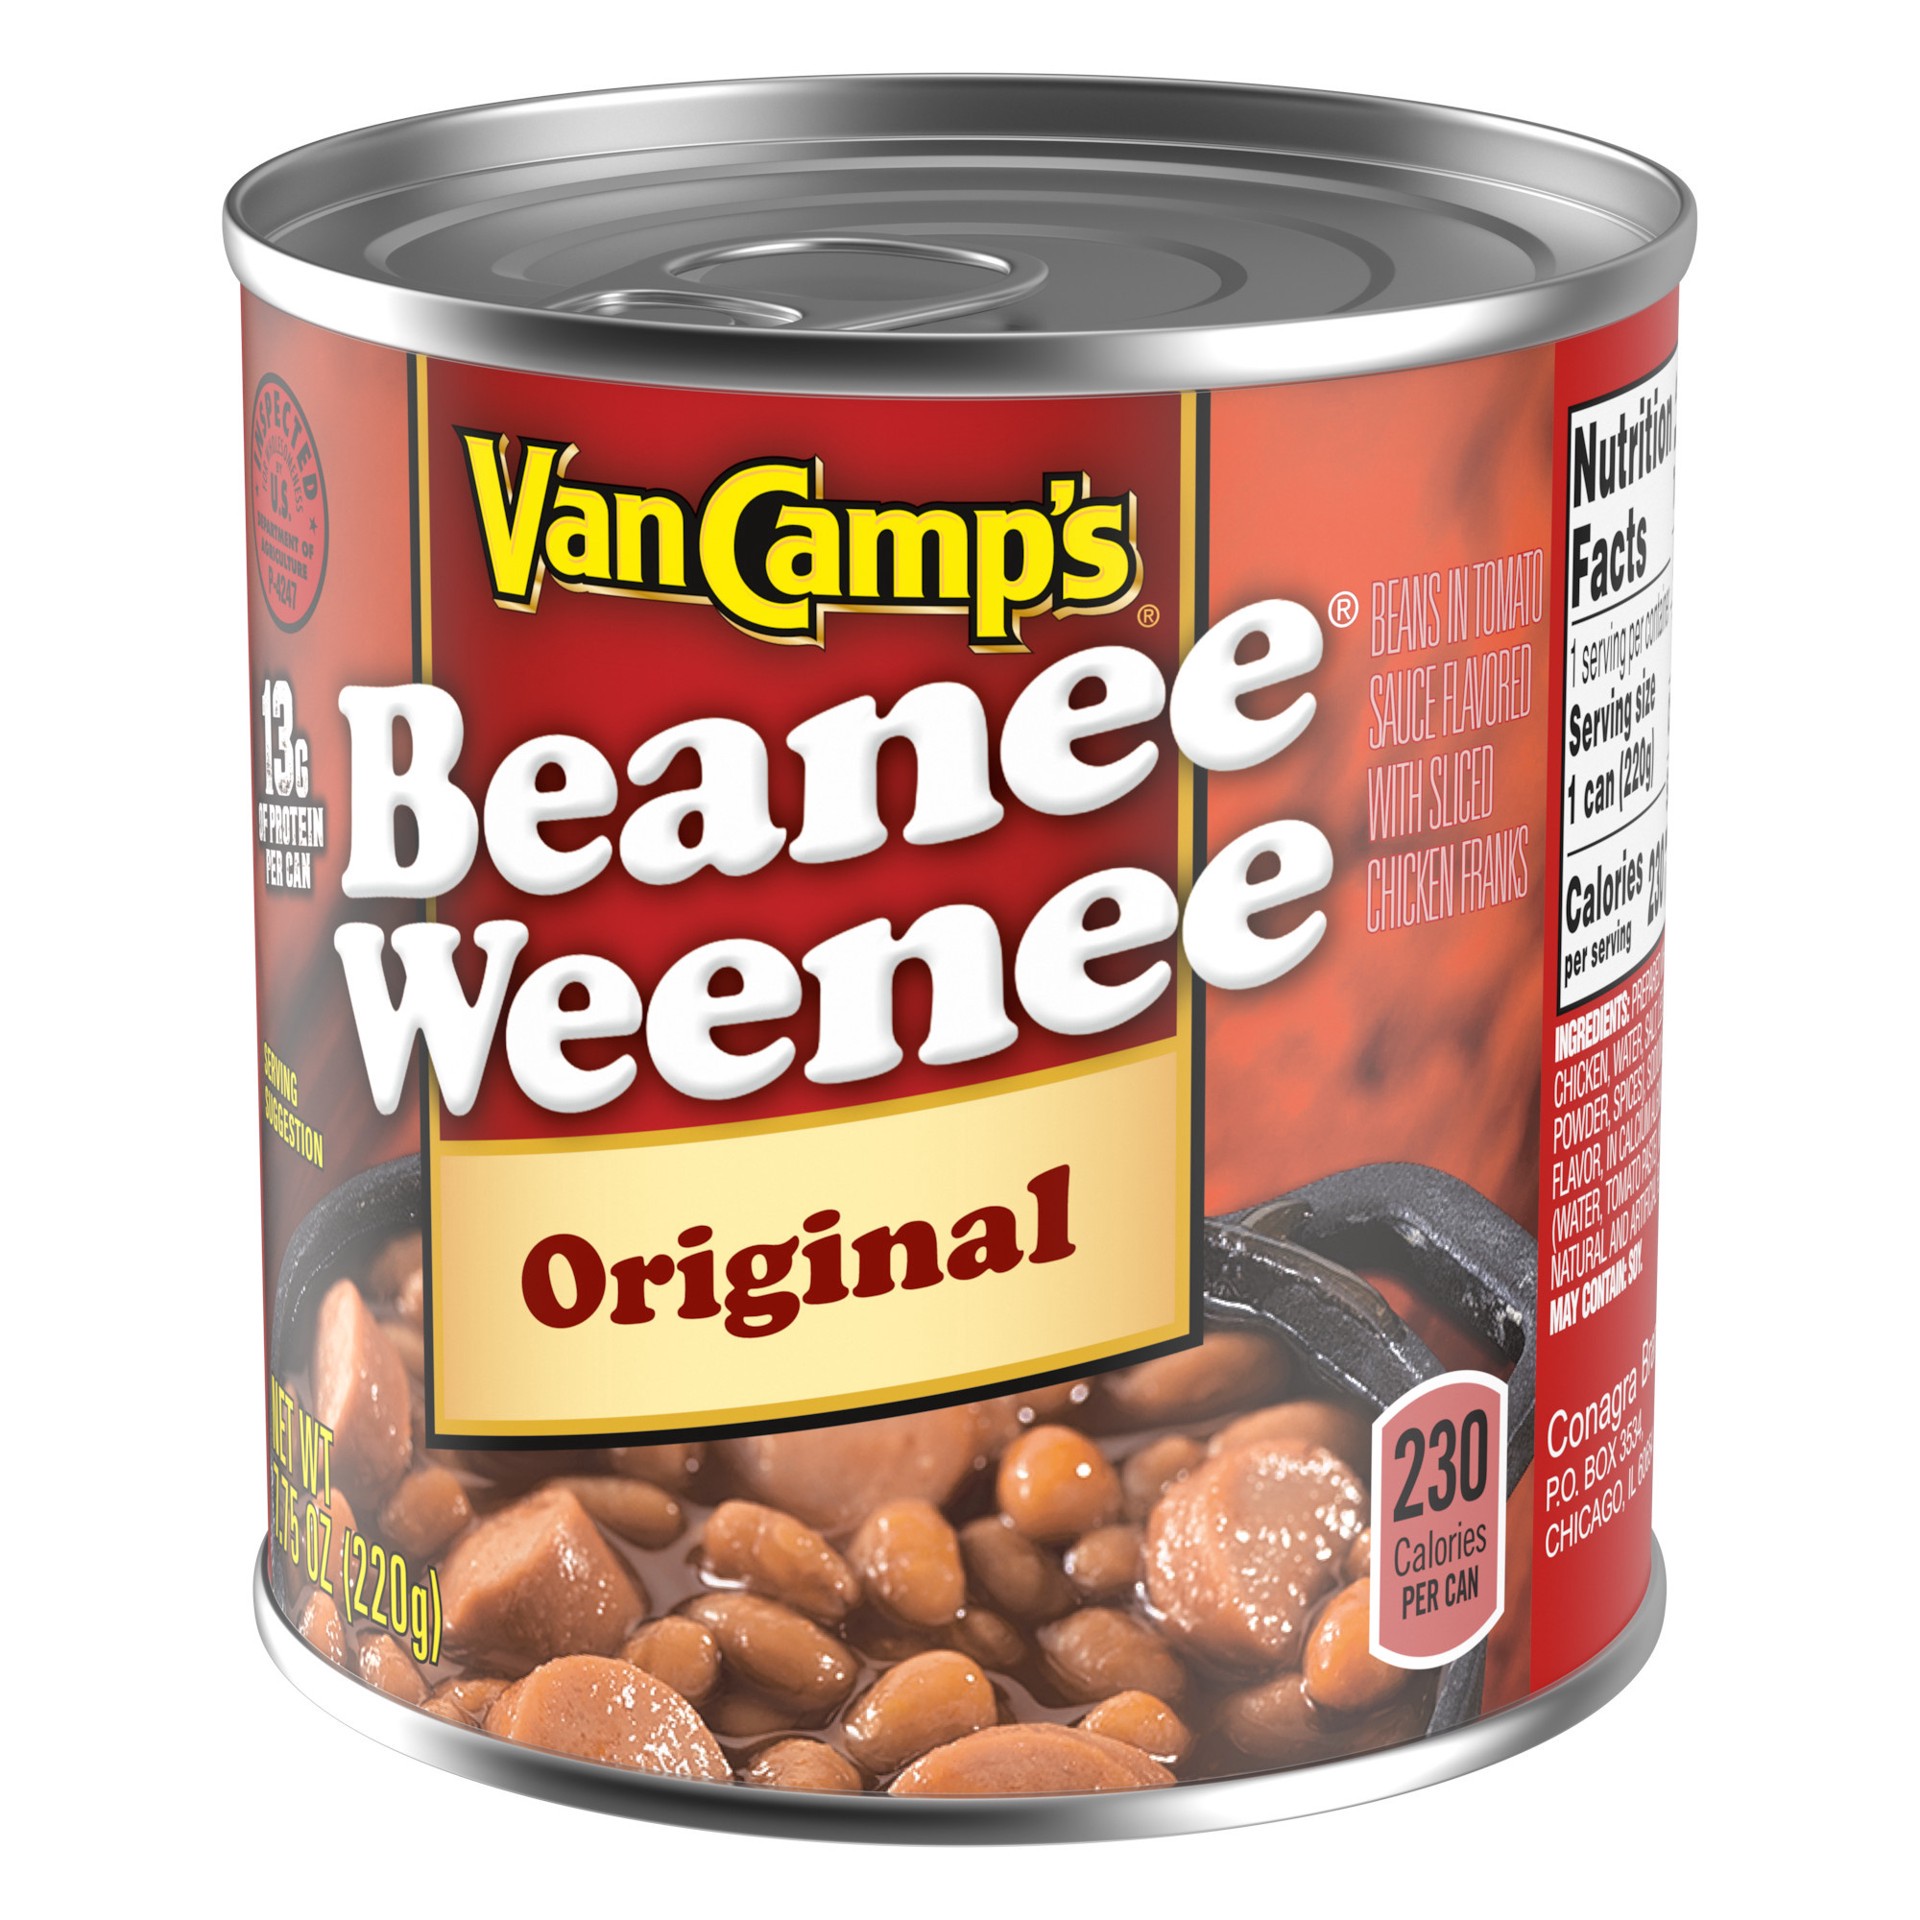 slide 4 of 5, Van Camp's Original Beanee Weenee, Canned Food, 7.75 OZ, 7.75 oz